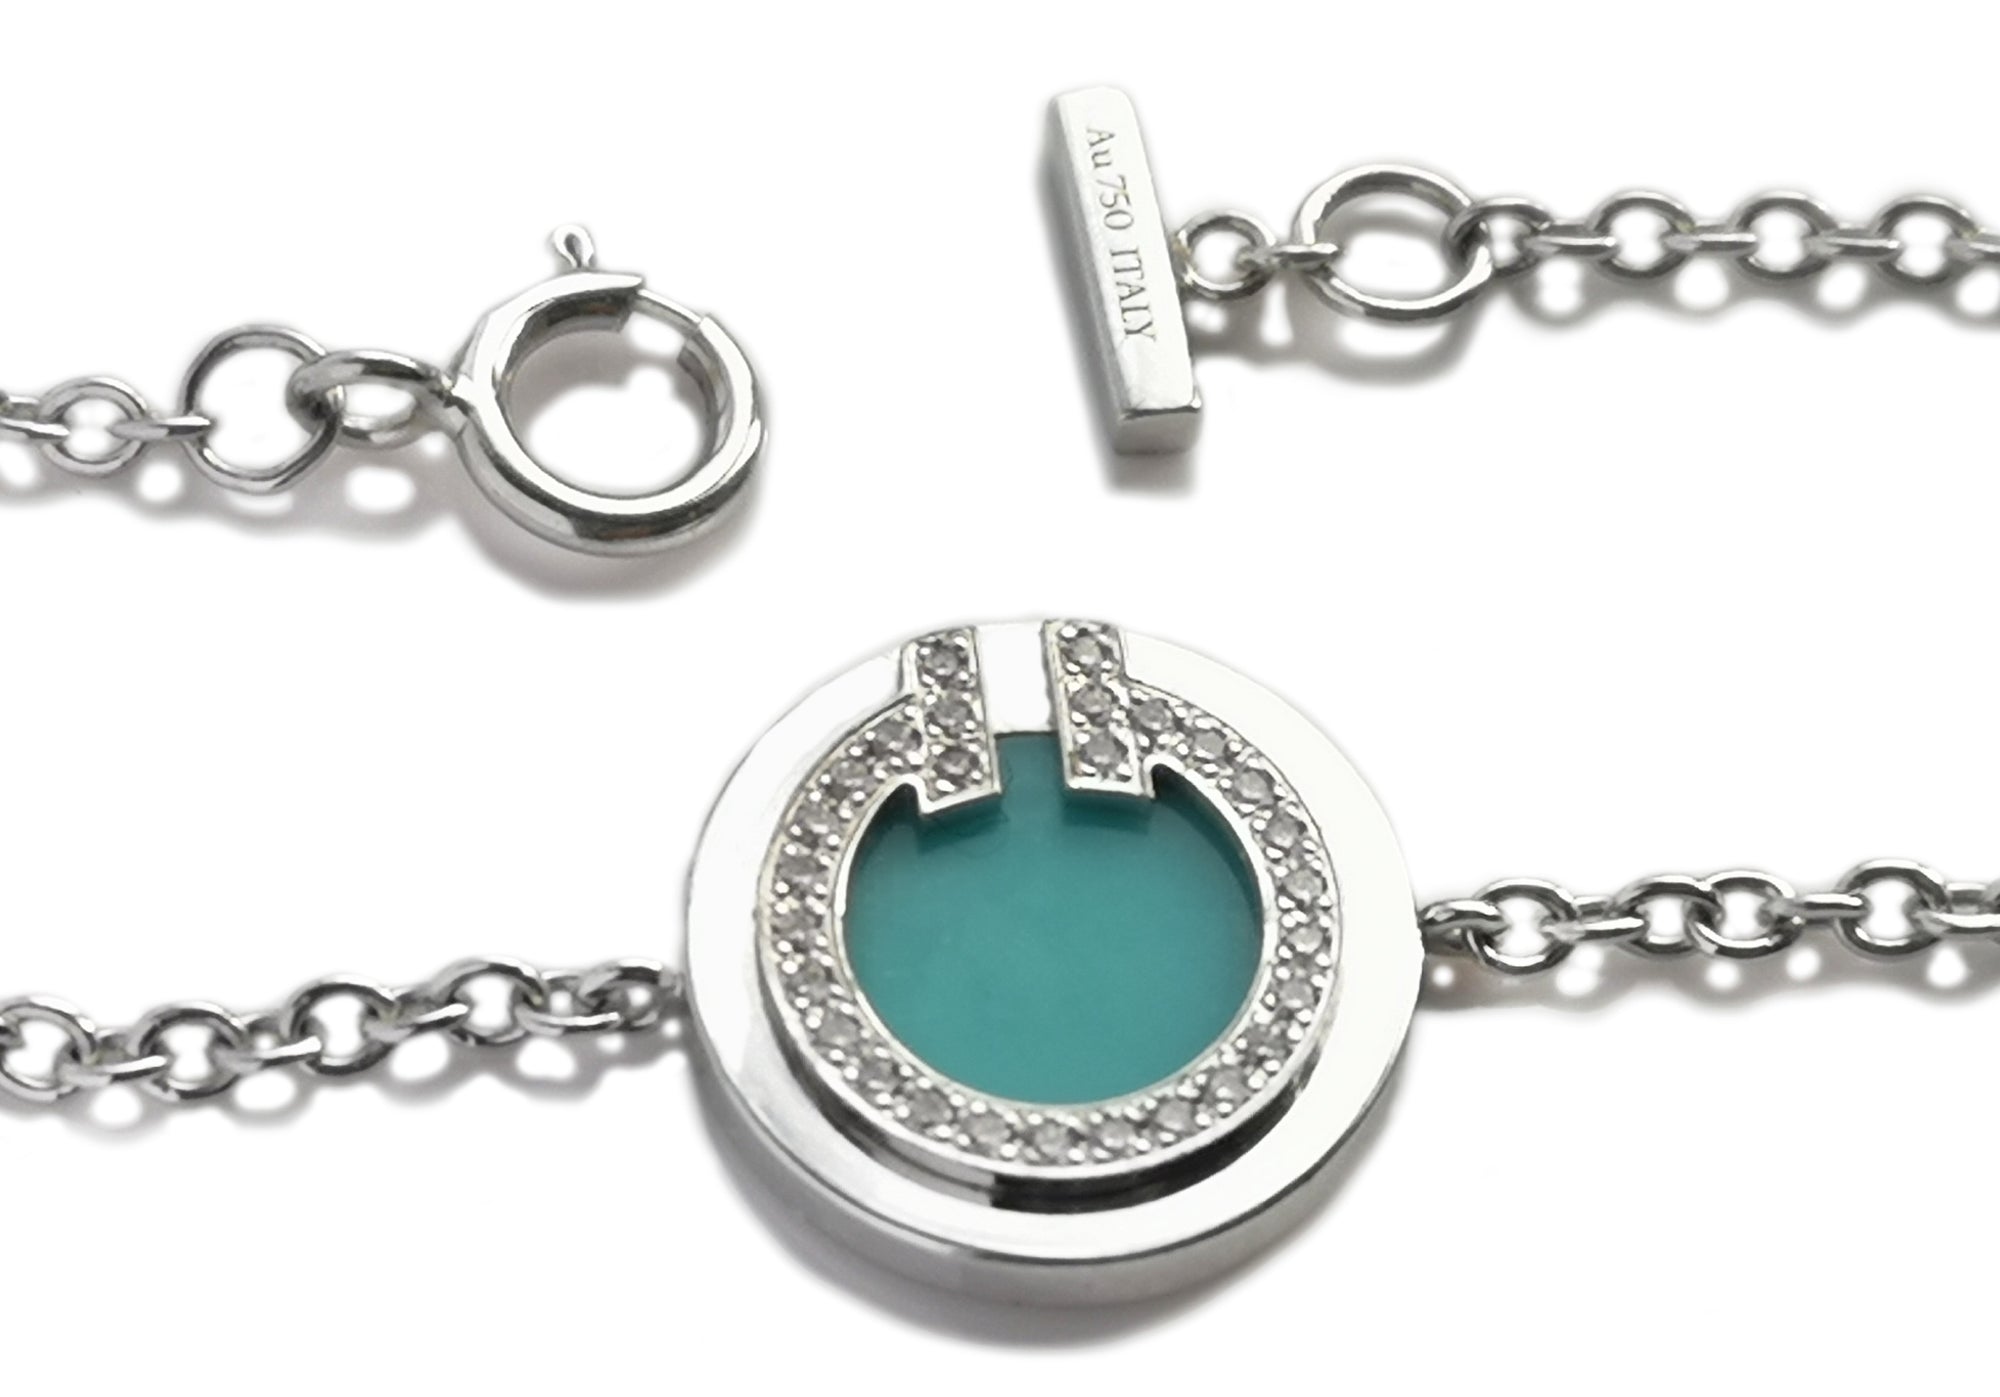 Tiffany & Co. T Circle 18k White Gold Bracelet With Turquoise & Diamonds Medium